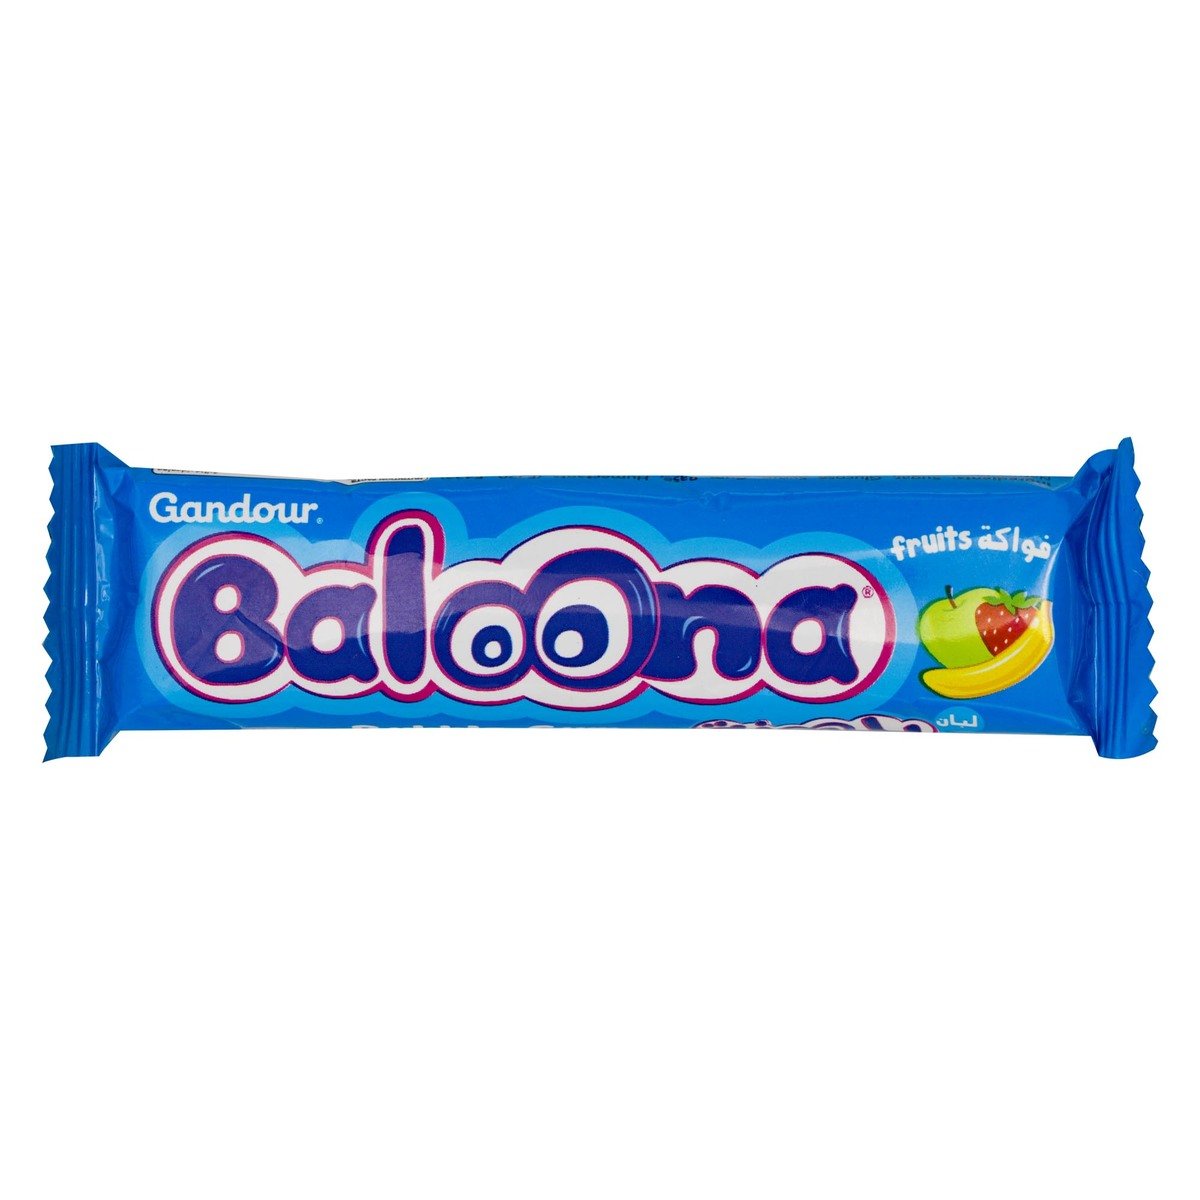 Gandour Baloona Fruits Bubble Gum 20 x 18g